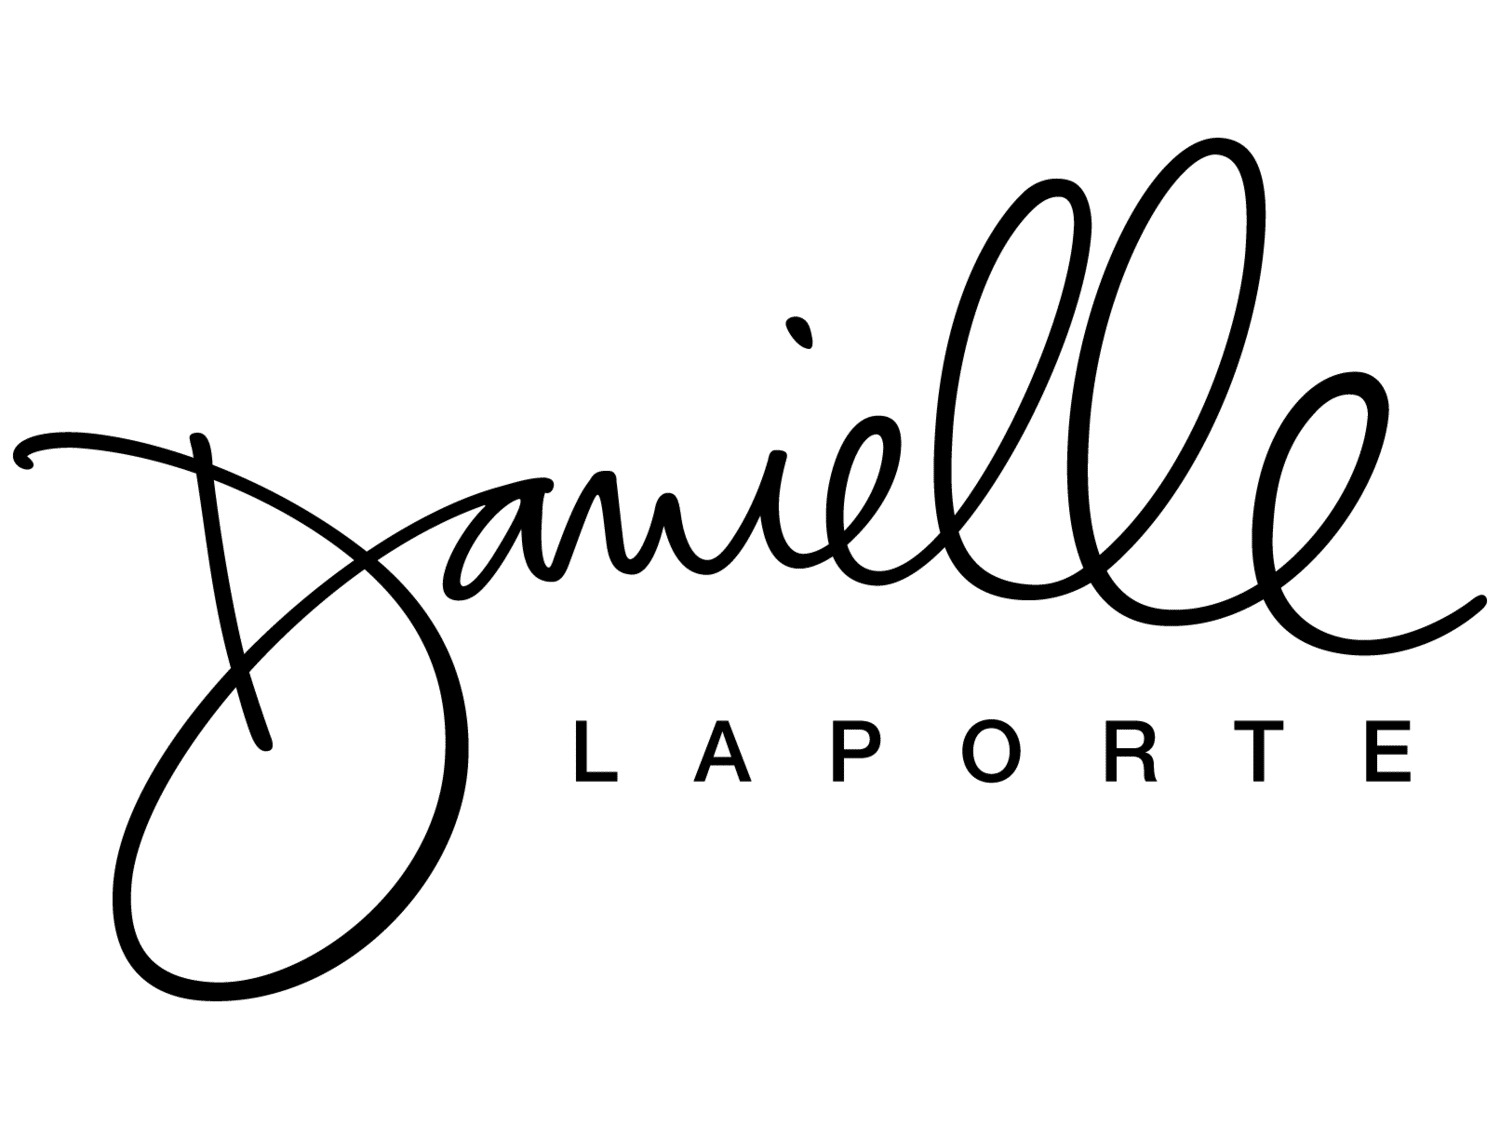 Danielle LaPorte